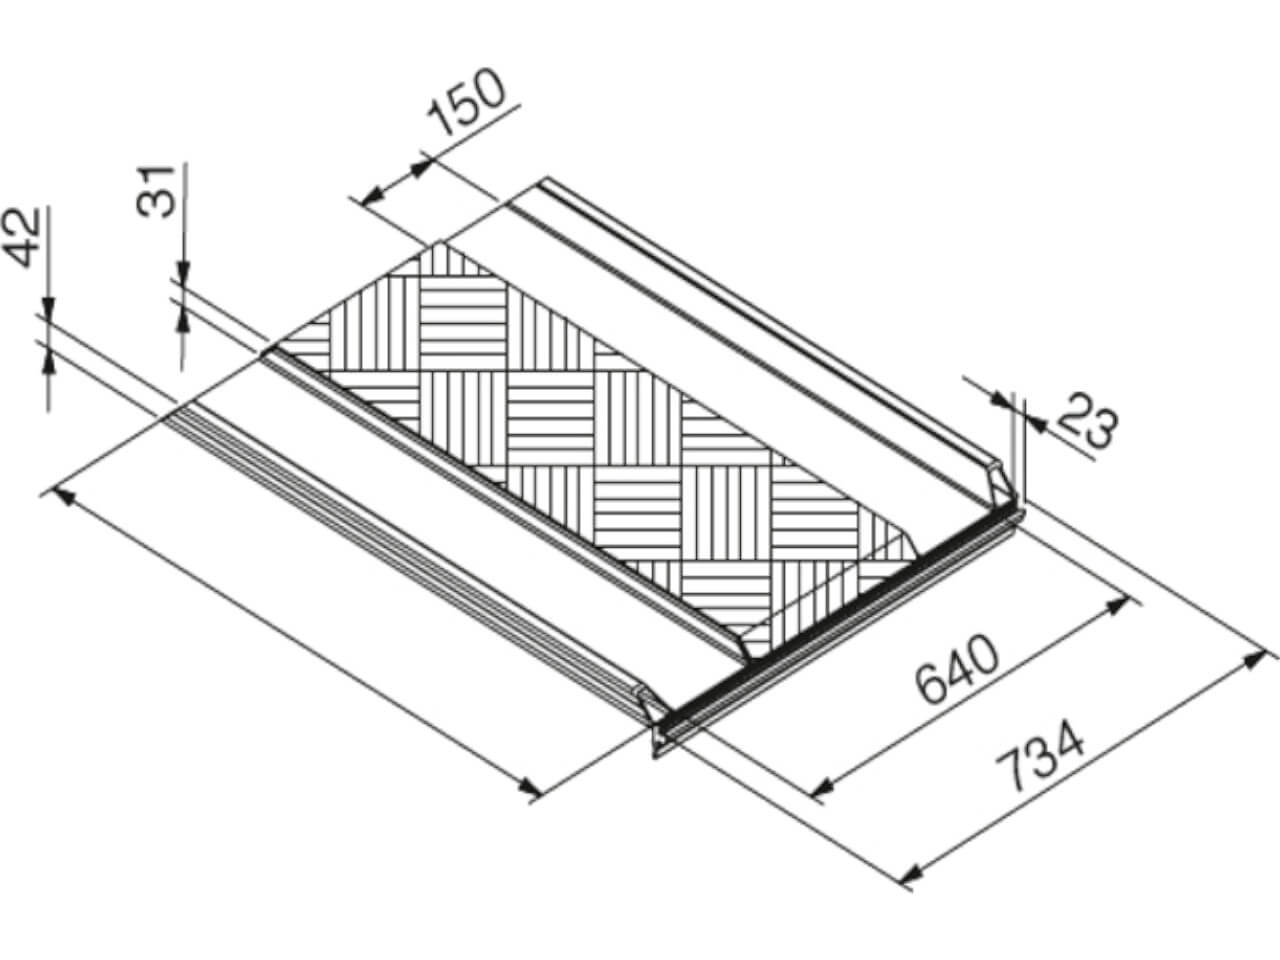 technische zeichnung einer lbgm auffahrrampe mit anschluss fuer eine pml alu plattform